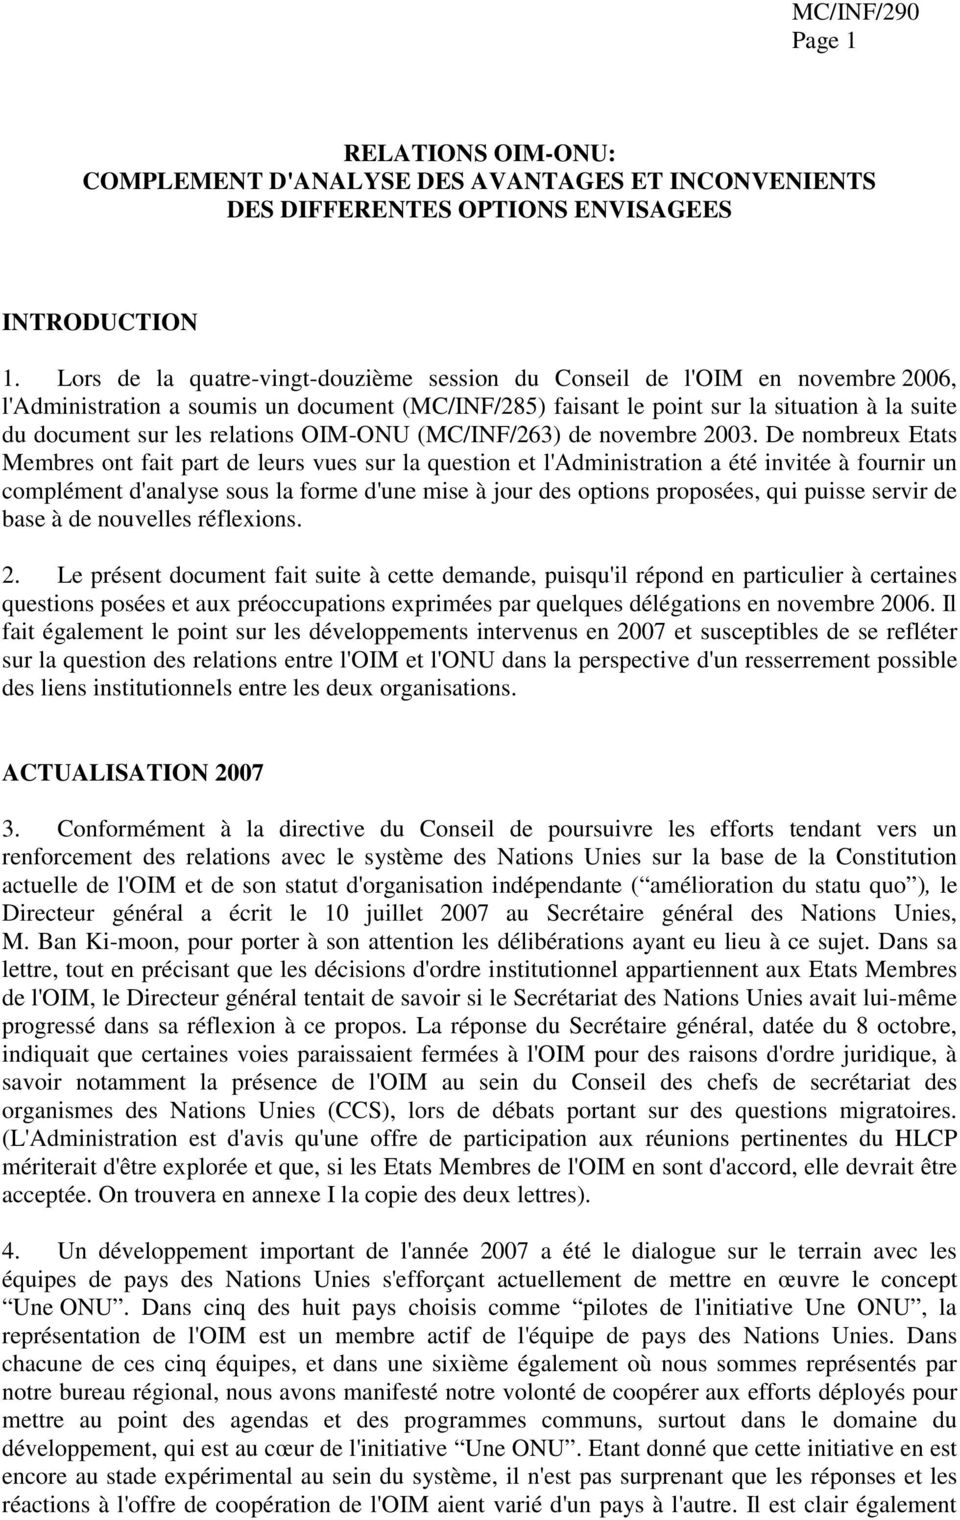 relations OIM-ONU (MC/INF/263) de novembre 2003.